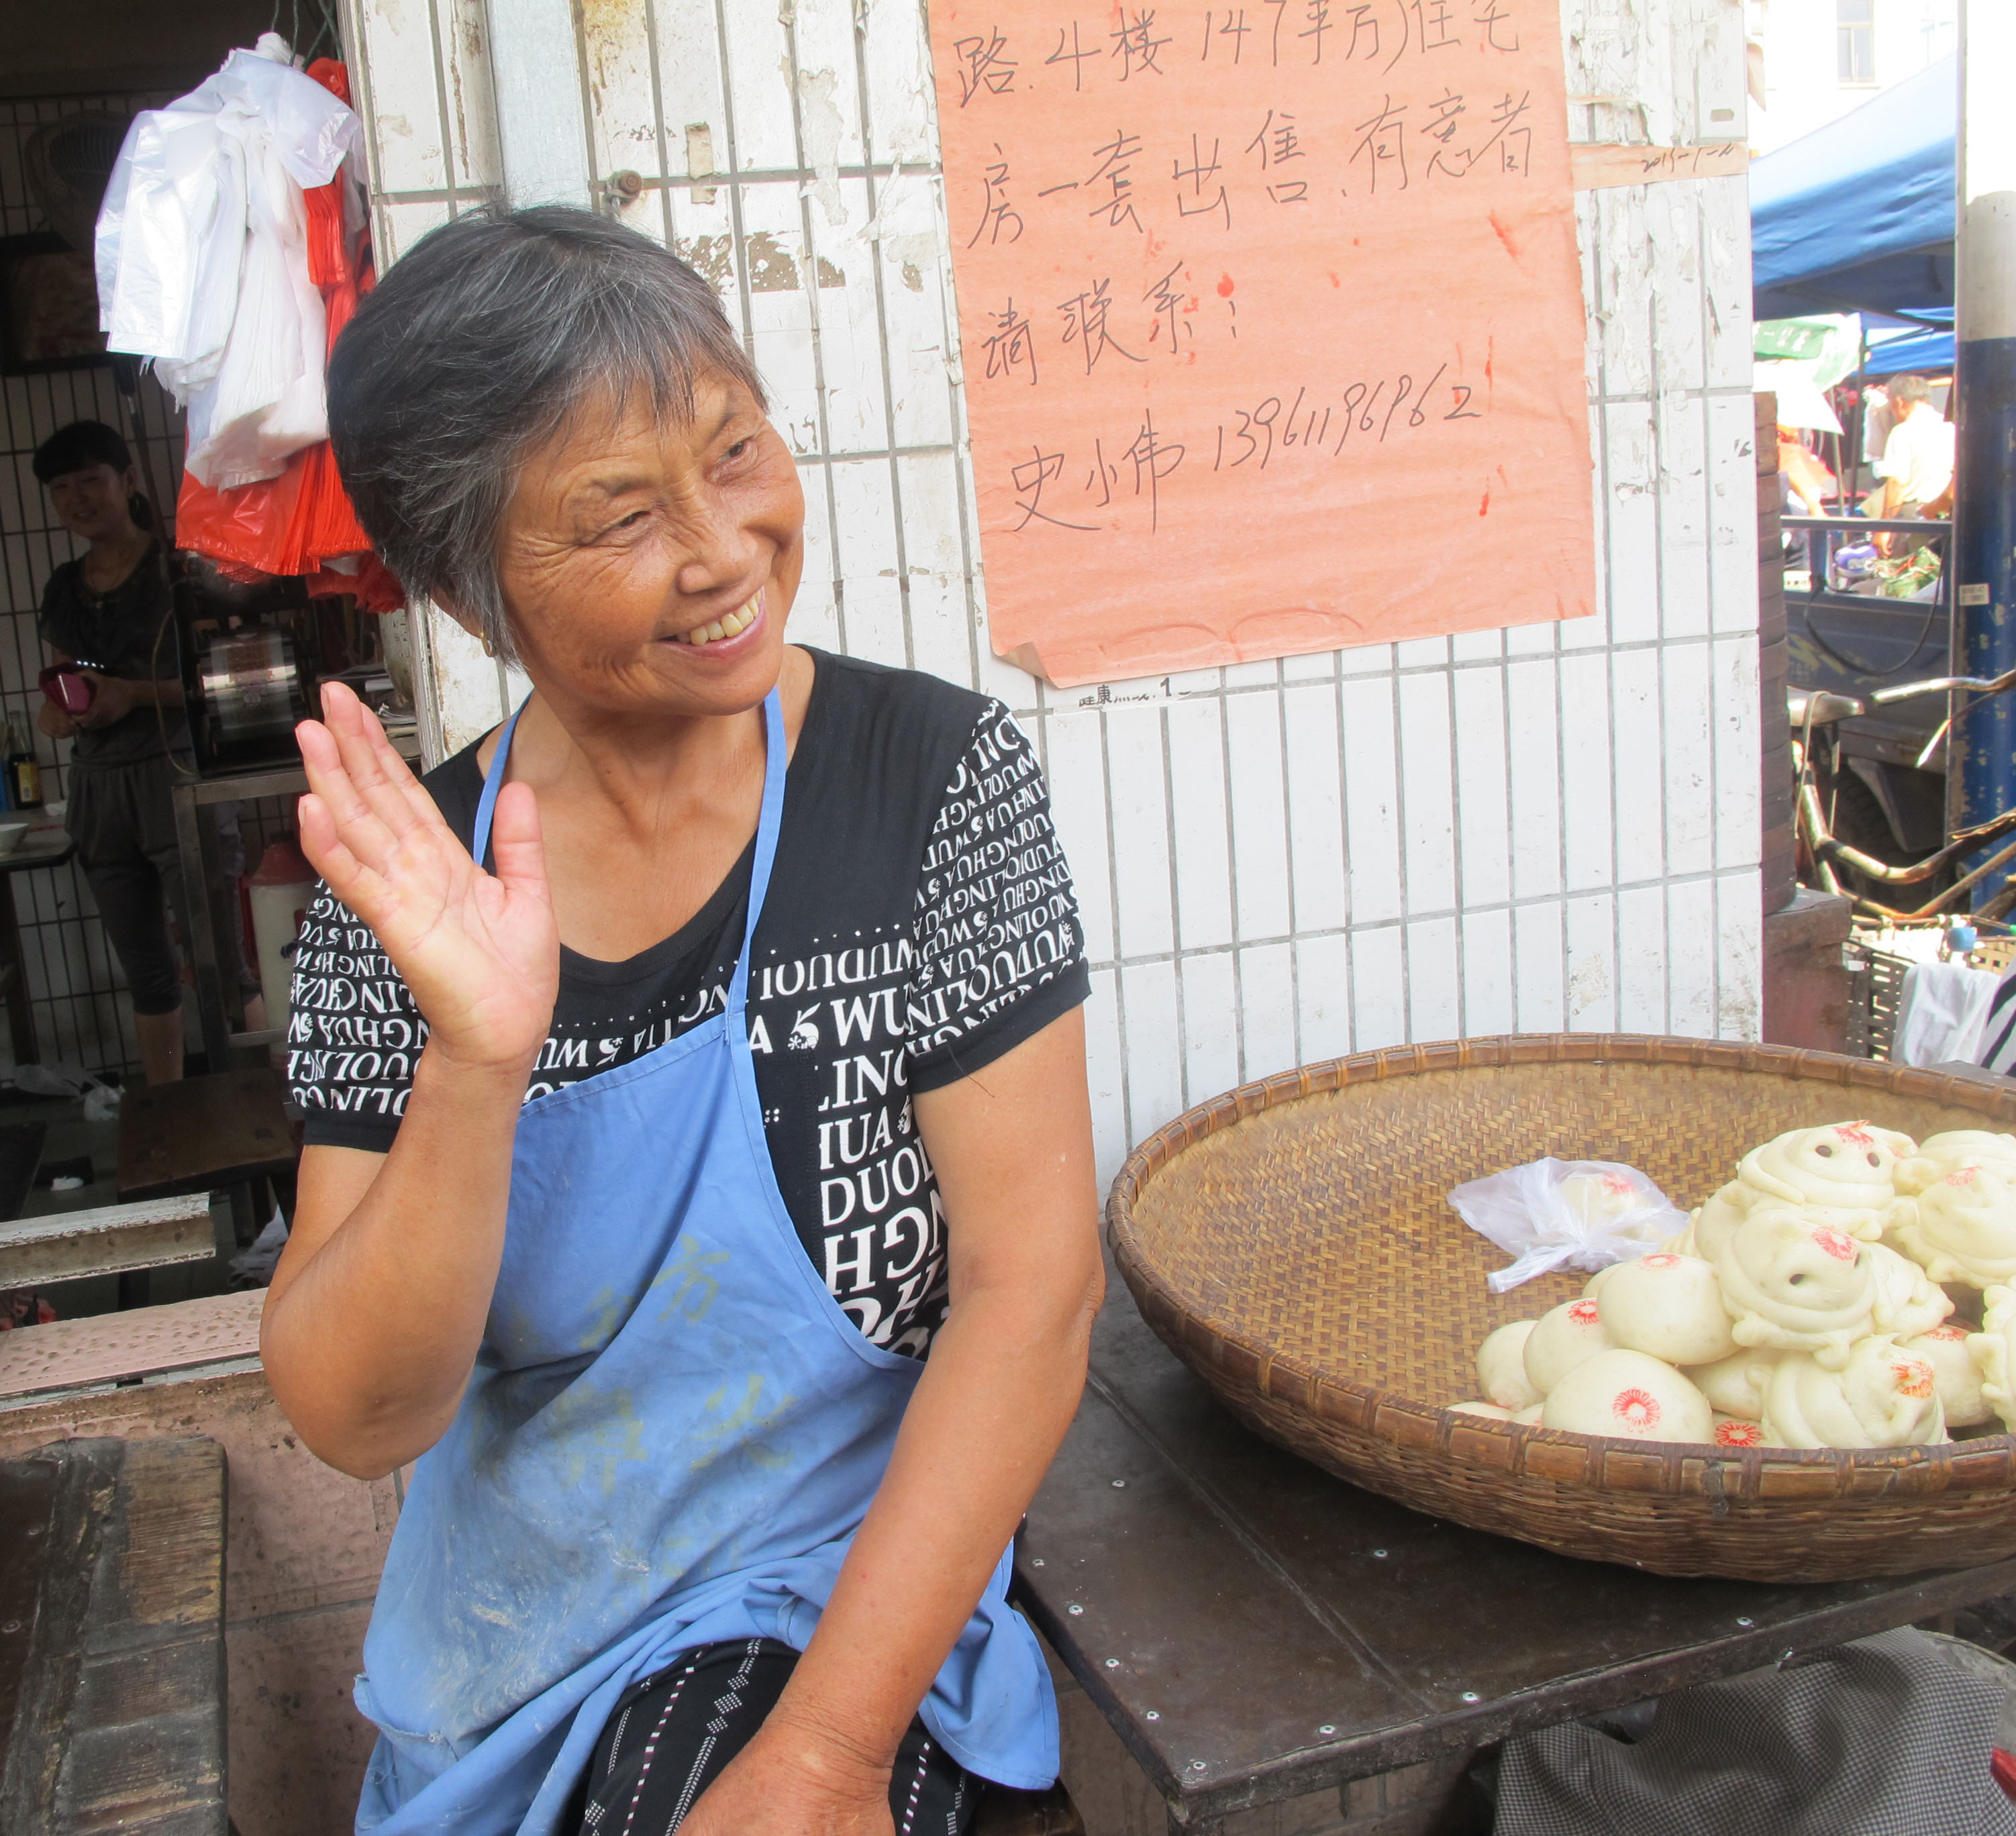 2-dumpling-seller-xiaxi-market